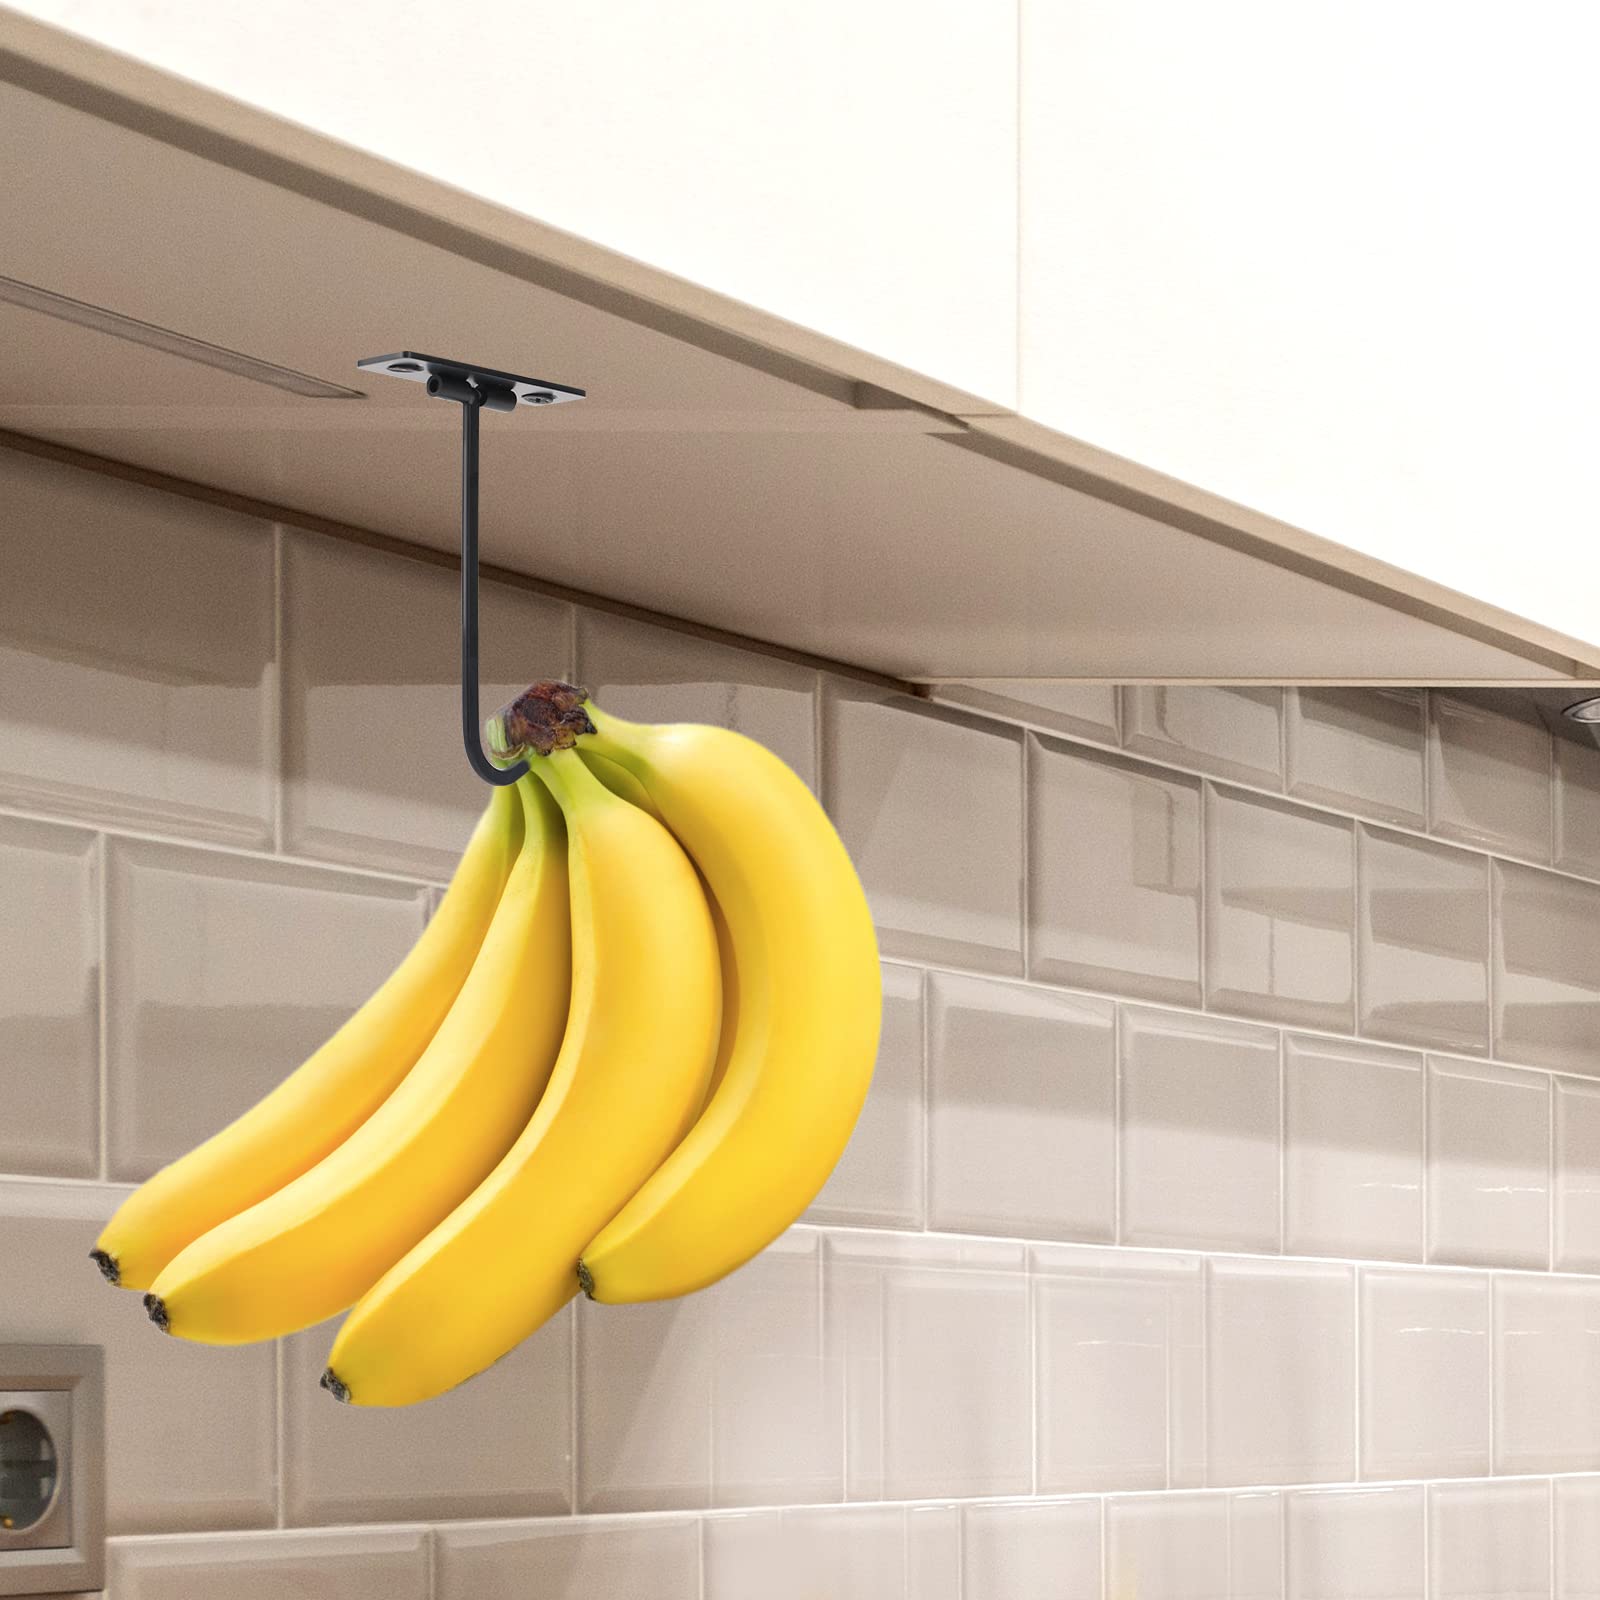 DAJIANG Banana Hook, Metal Banana Hanger Under Cabinet to Keep Bananas Fresh, Banana Holder for Bananas or Other Kitchen Items (Black)